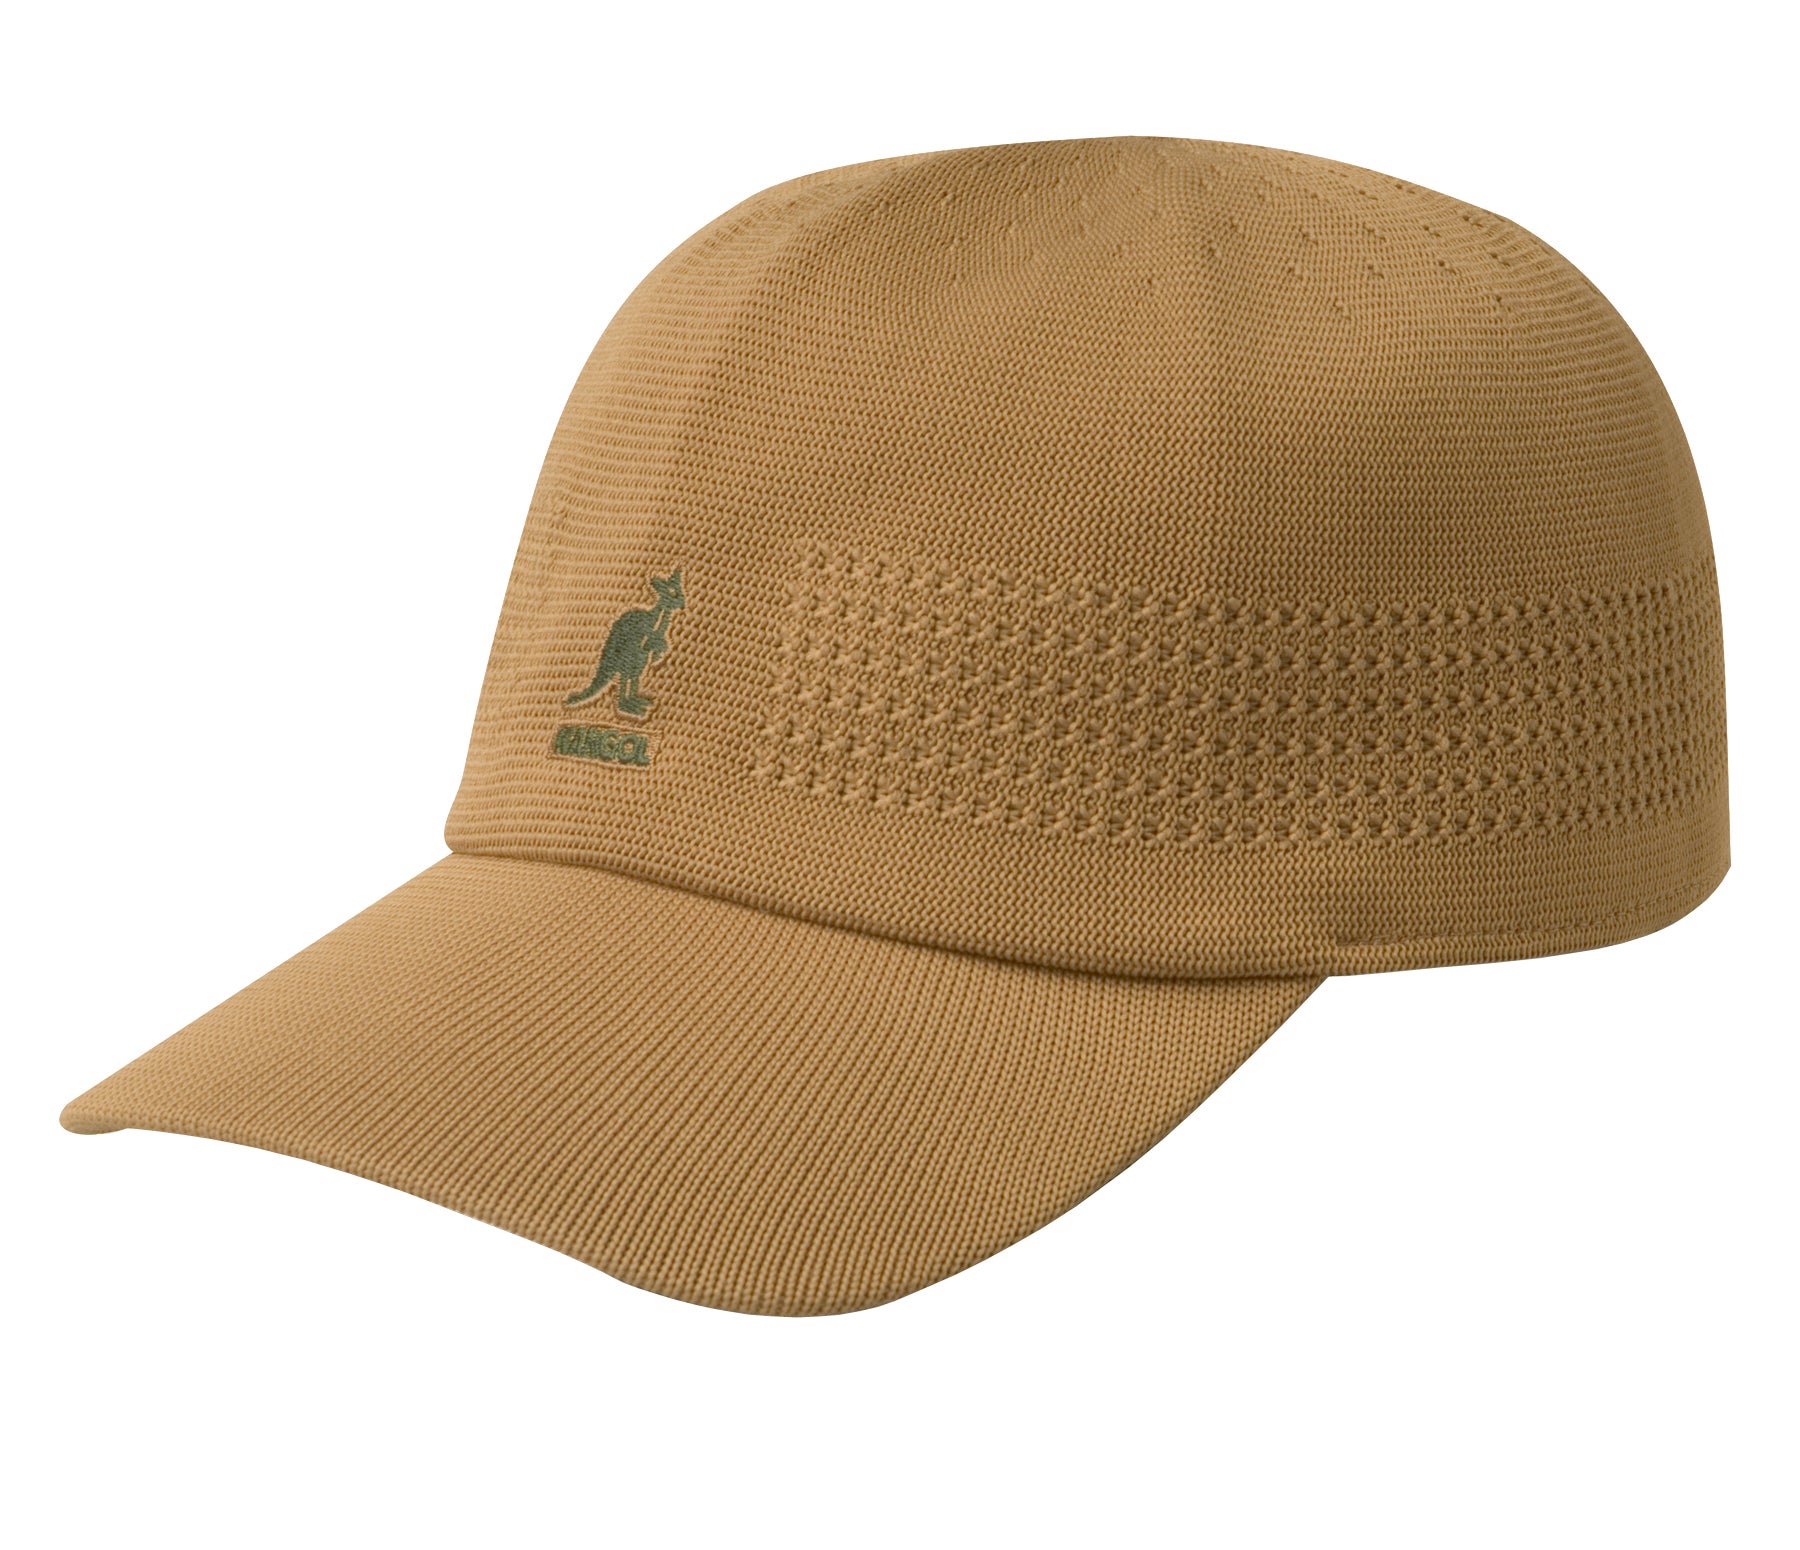 Kangol Baseball Hat - Tropic Ventair Spacecqp